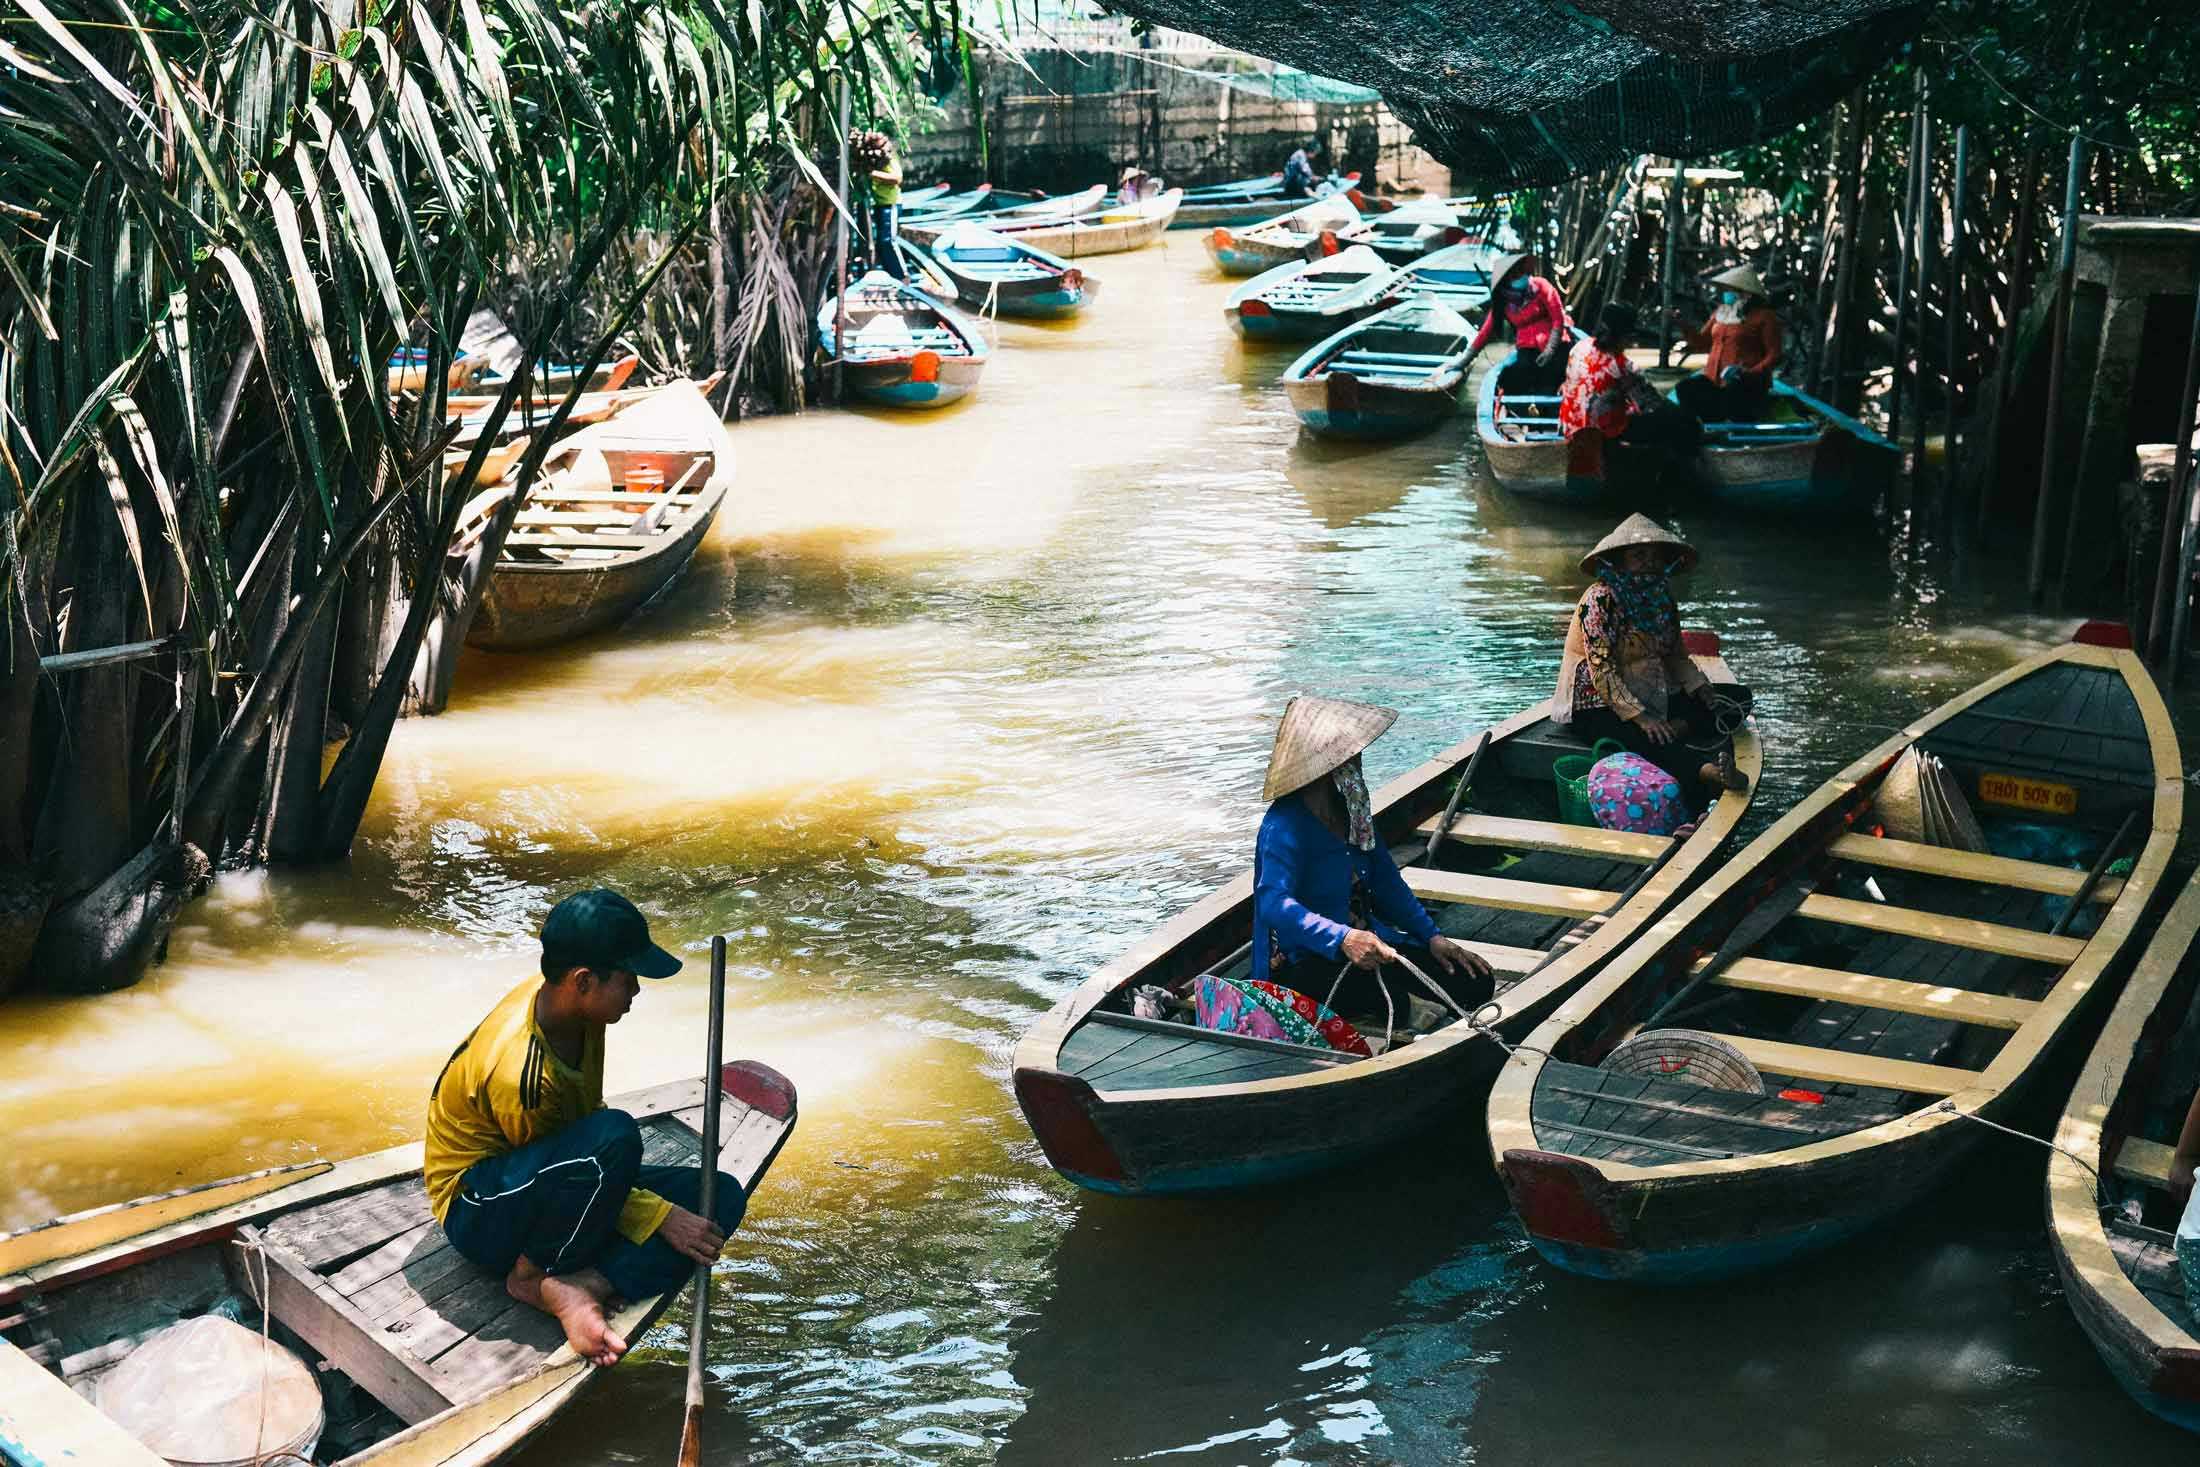 Vakantie in Vietnam: Een Onvergetelijke Rondreis door het Land van de Rijzende Draak